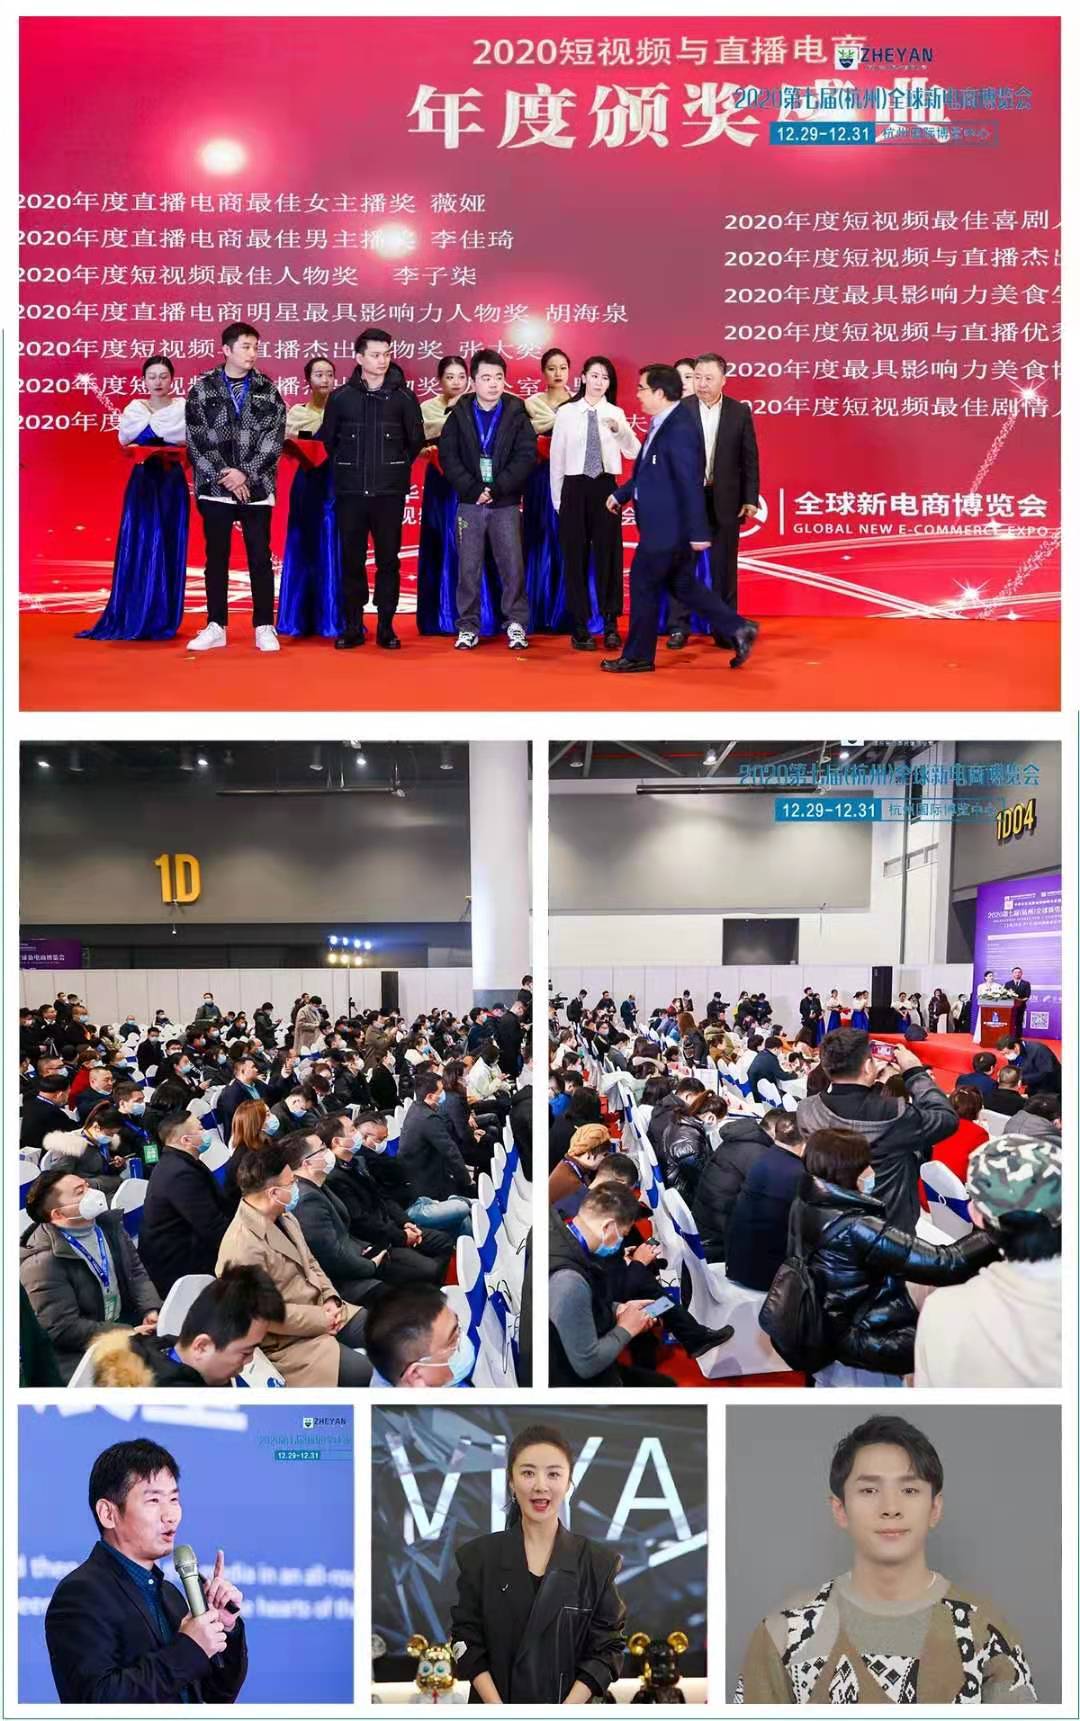 2021第八届全球新电商大会暨杭州社交新零售网红直播微商电商博览会